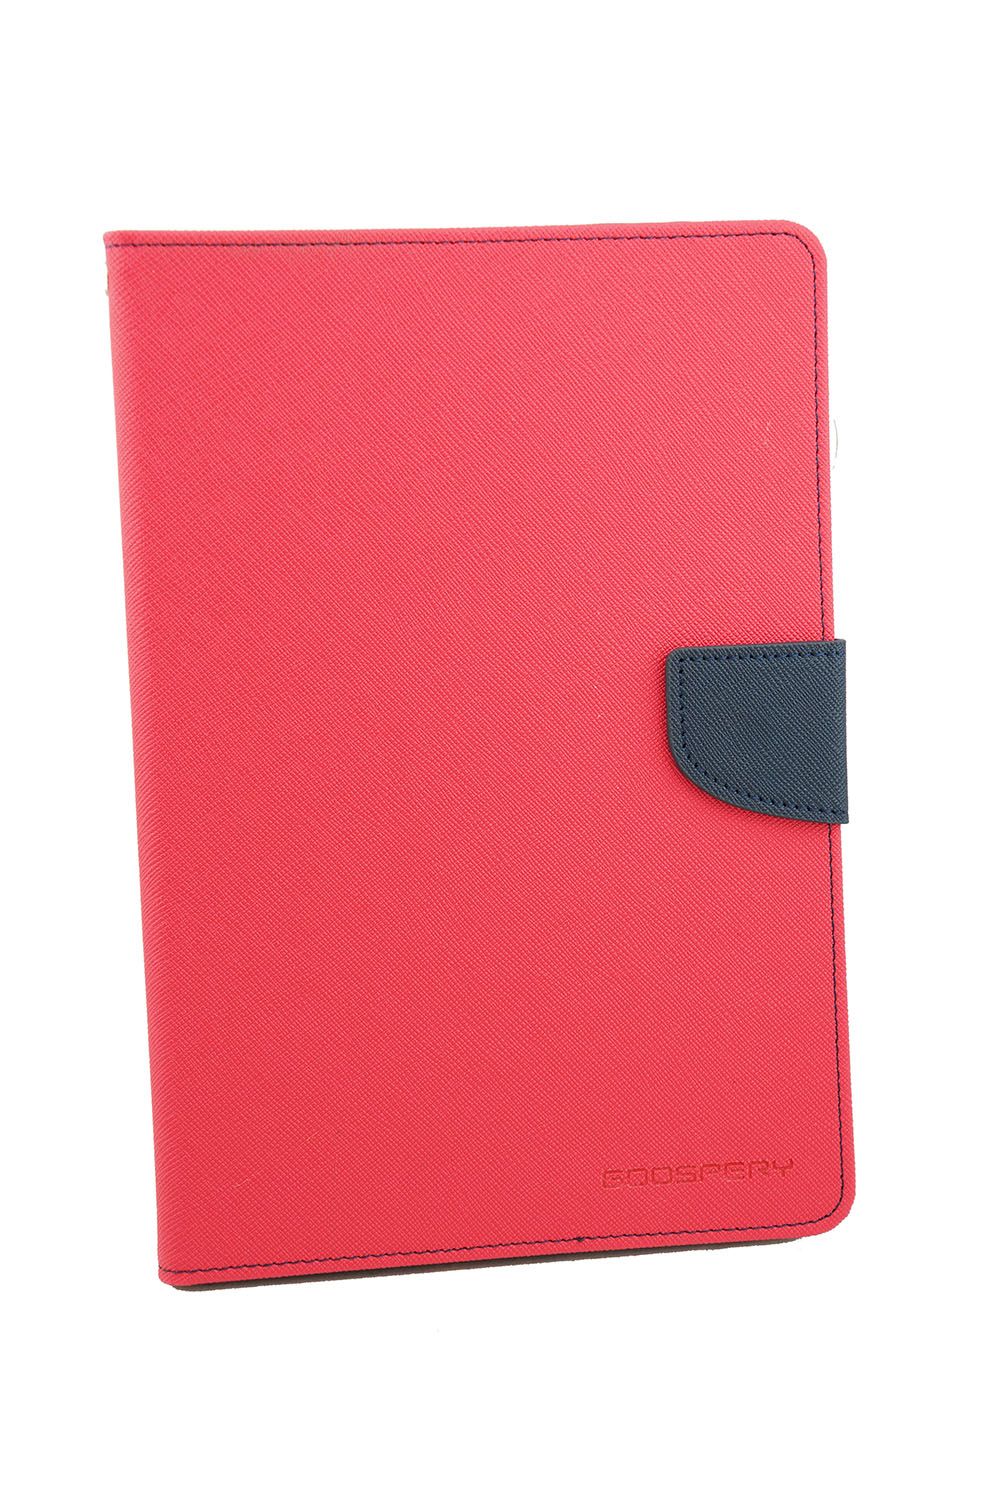 iPad Pro 9.7 Goospery Mercury Fancy Diary - Hot Pink/Navy